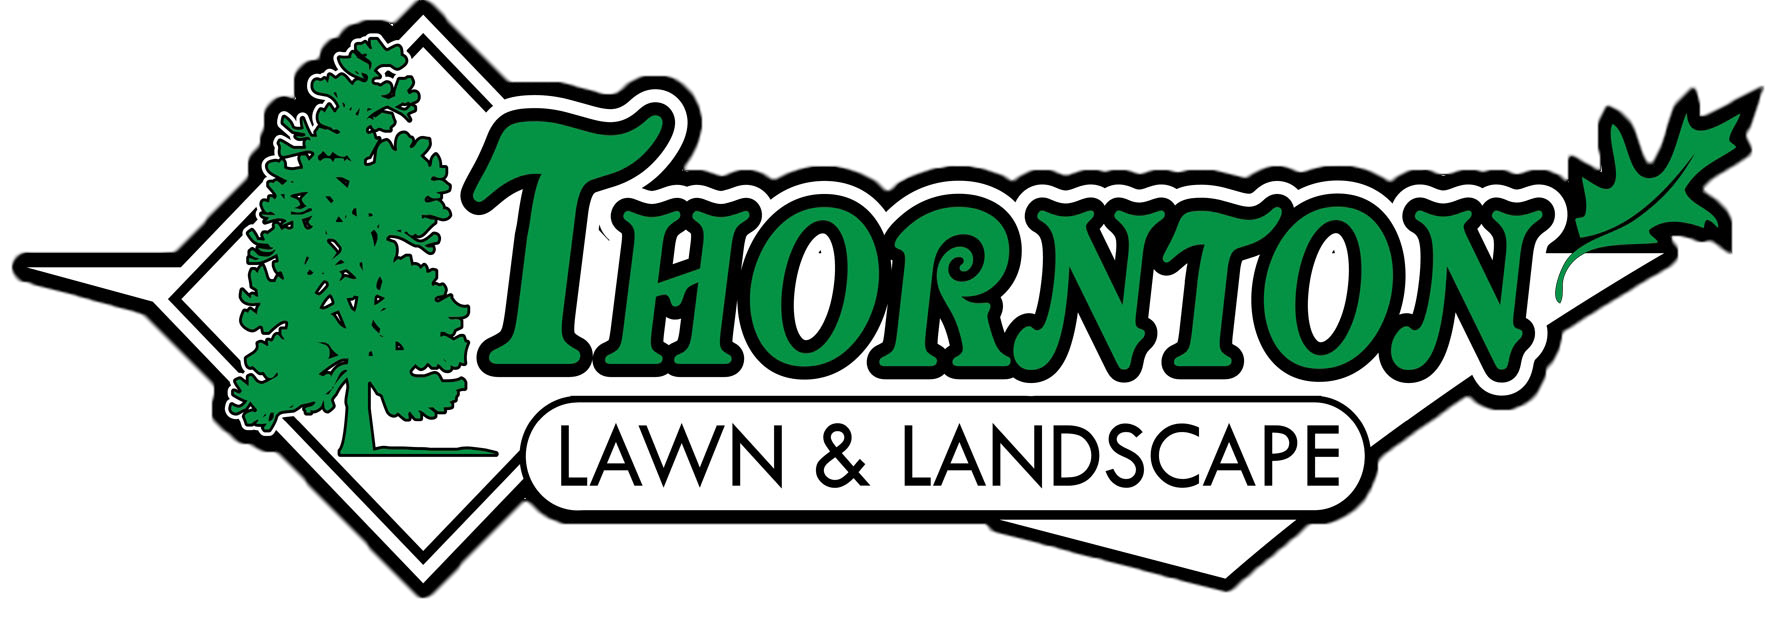 Thornton Lawn & Landscape LLC Logo